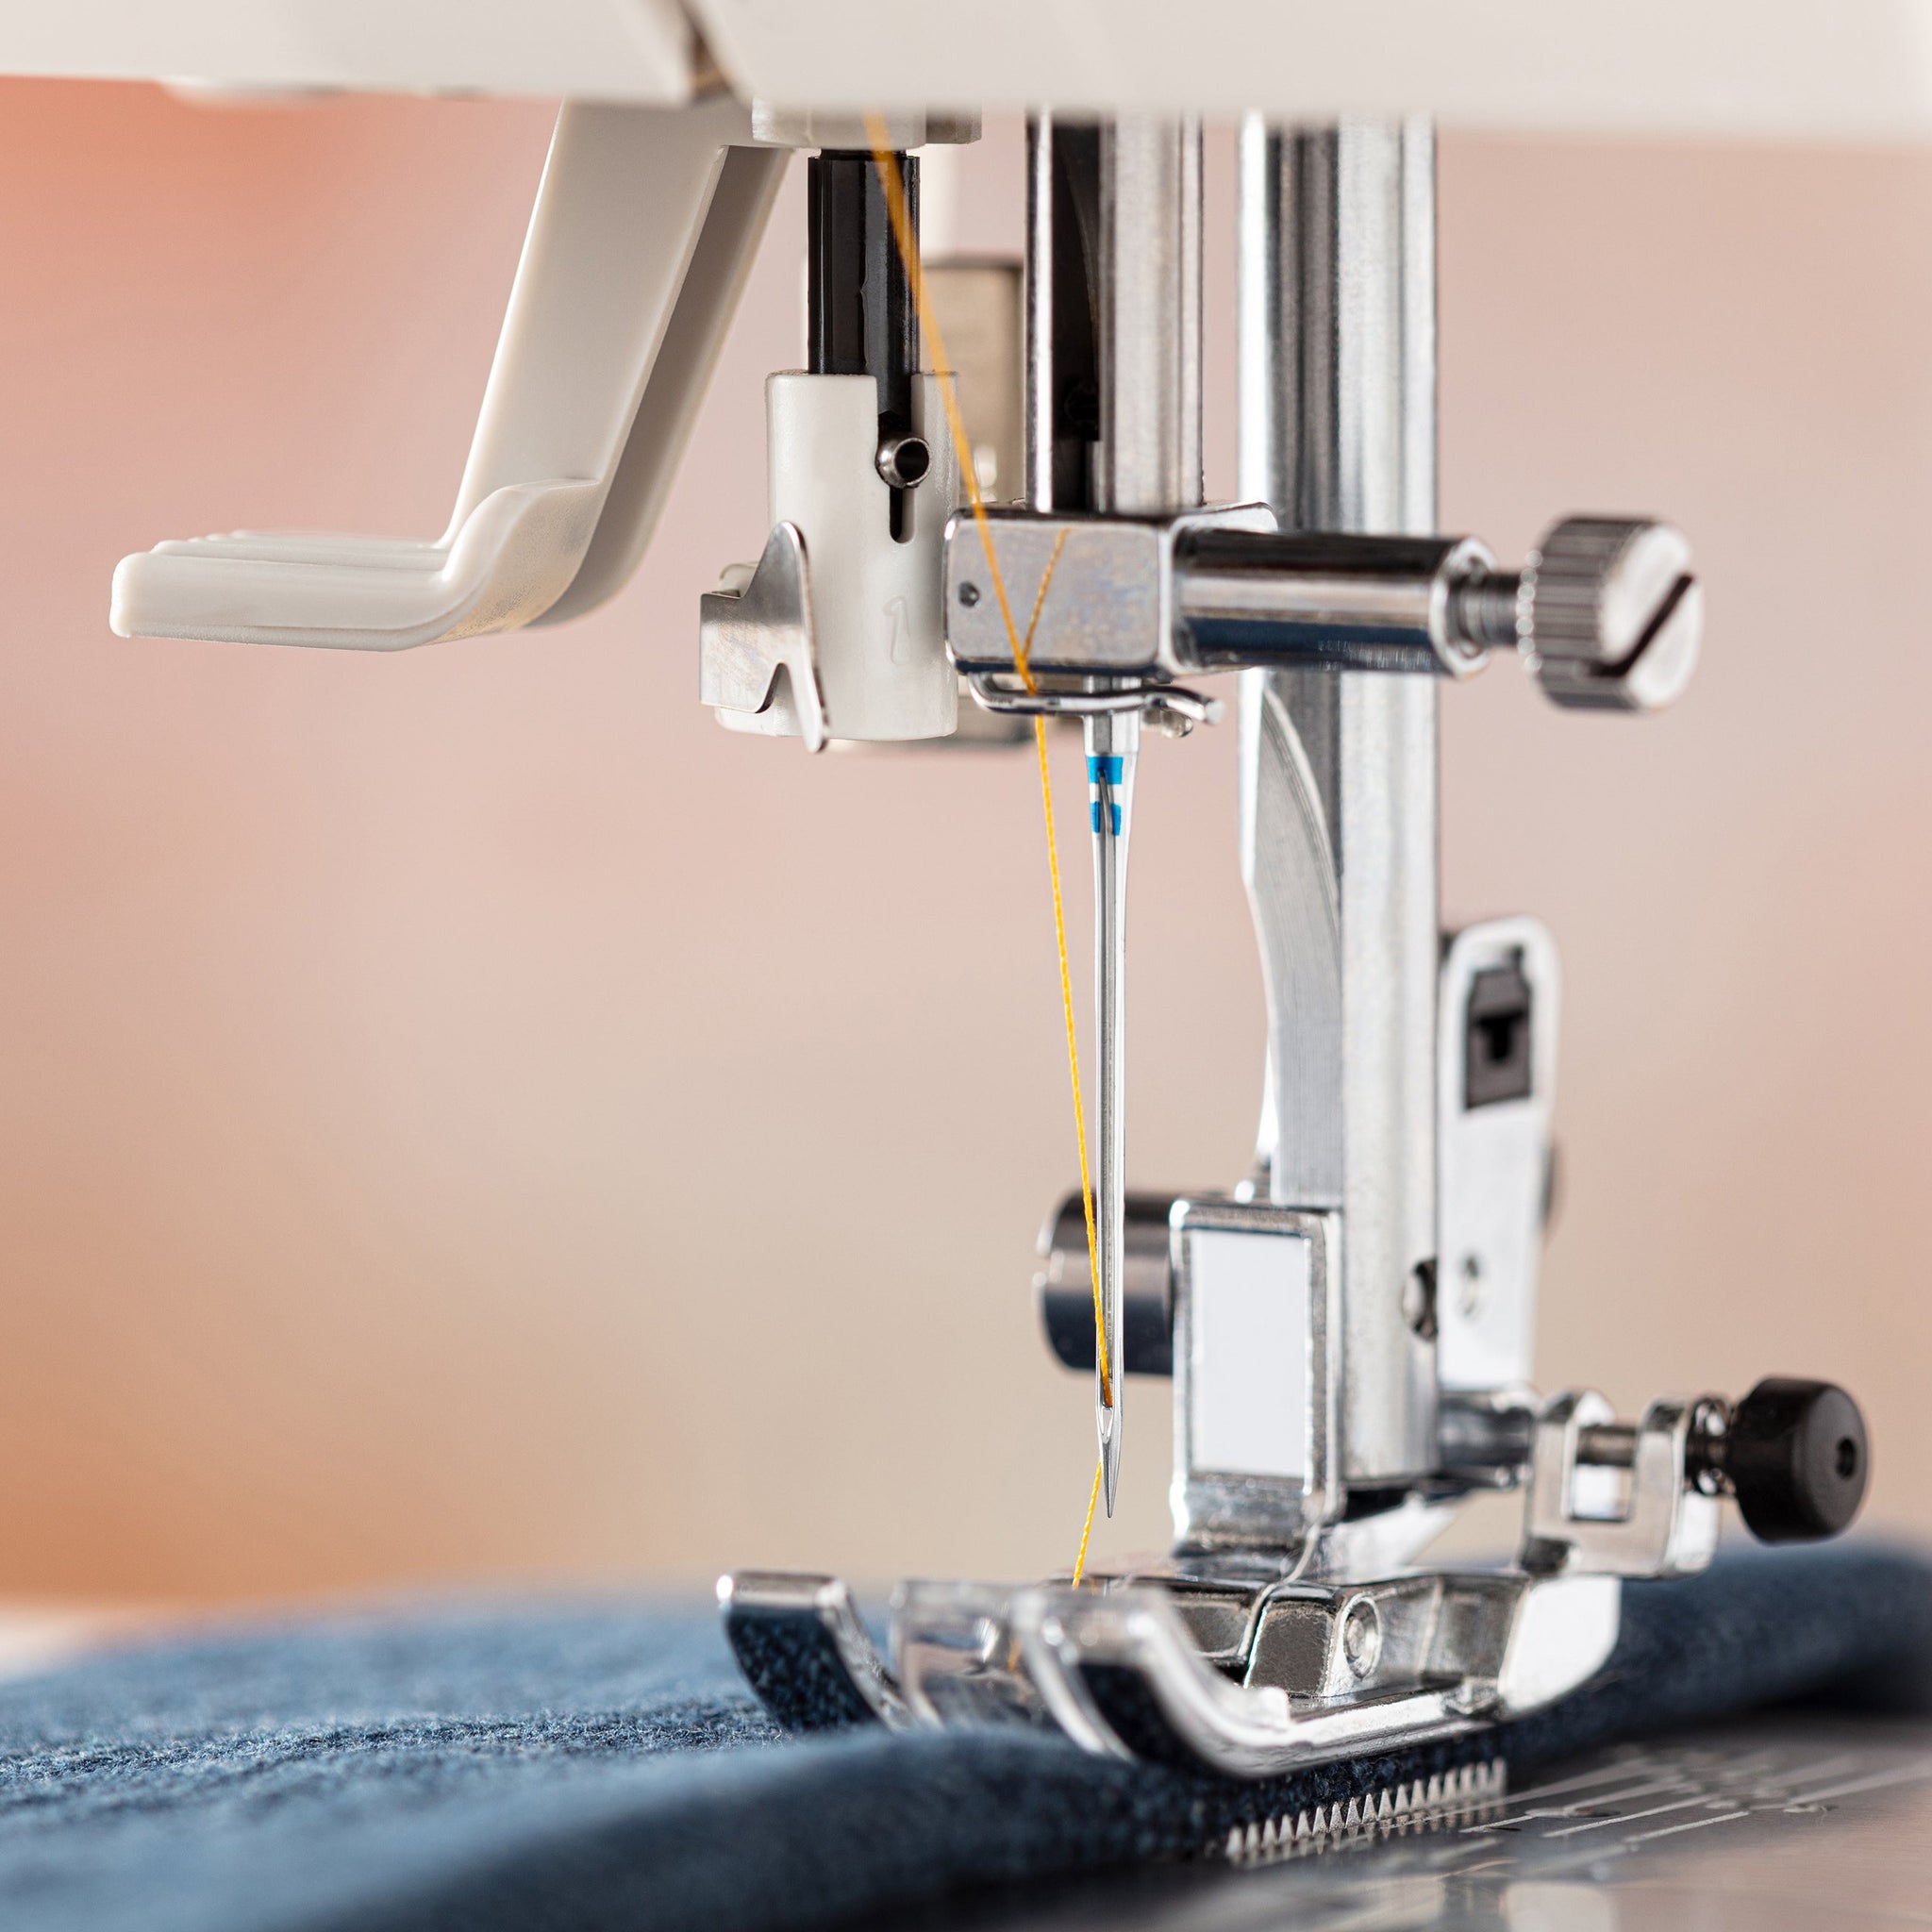 Jeans/Denim Sewing Machine Needles – SCHMETZneedles